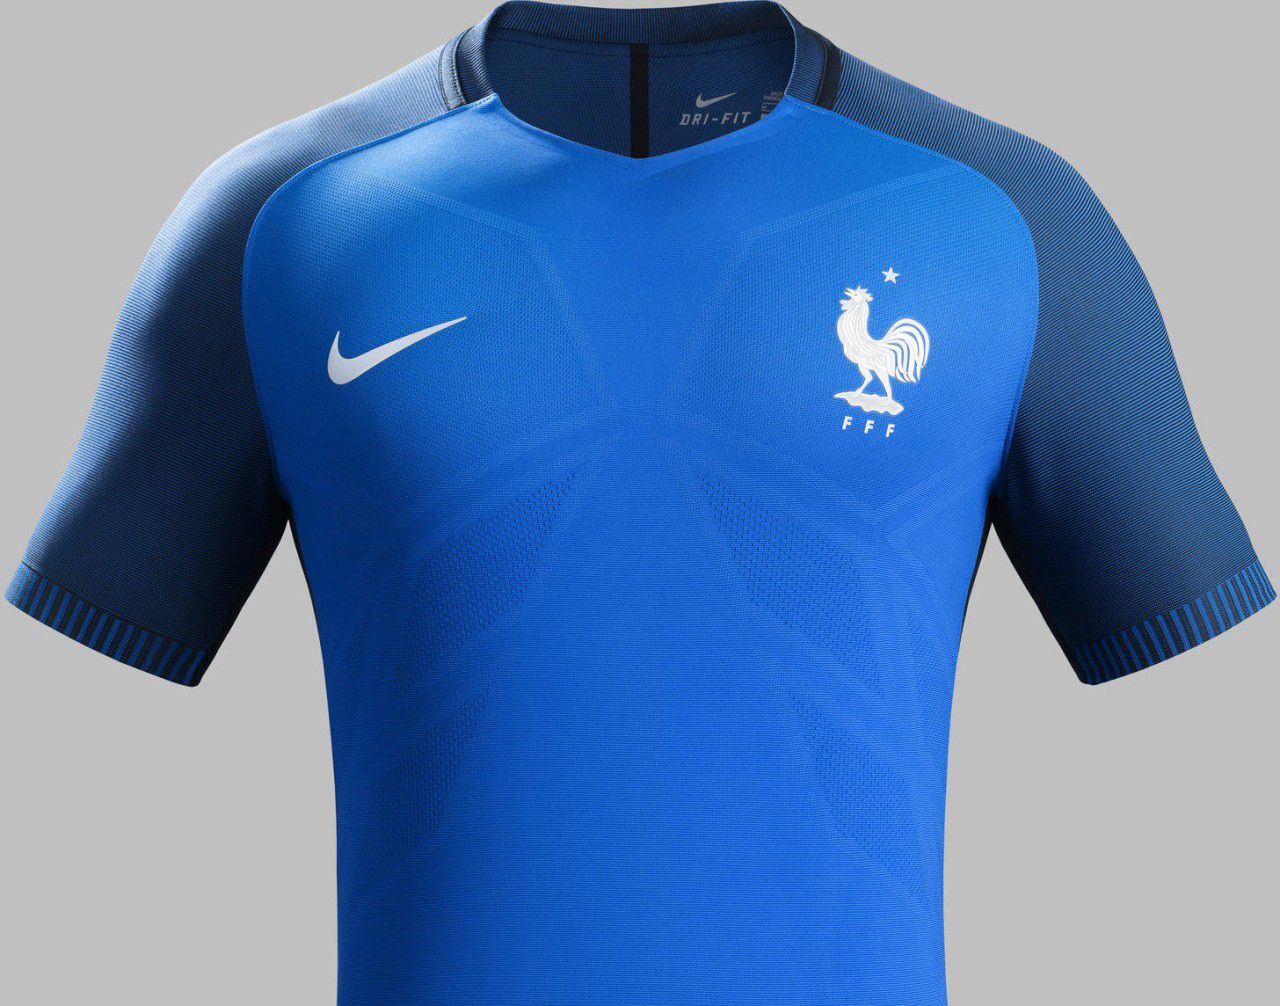 フランス代表 EURO2016 ユニフォーム - ユニ11